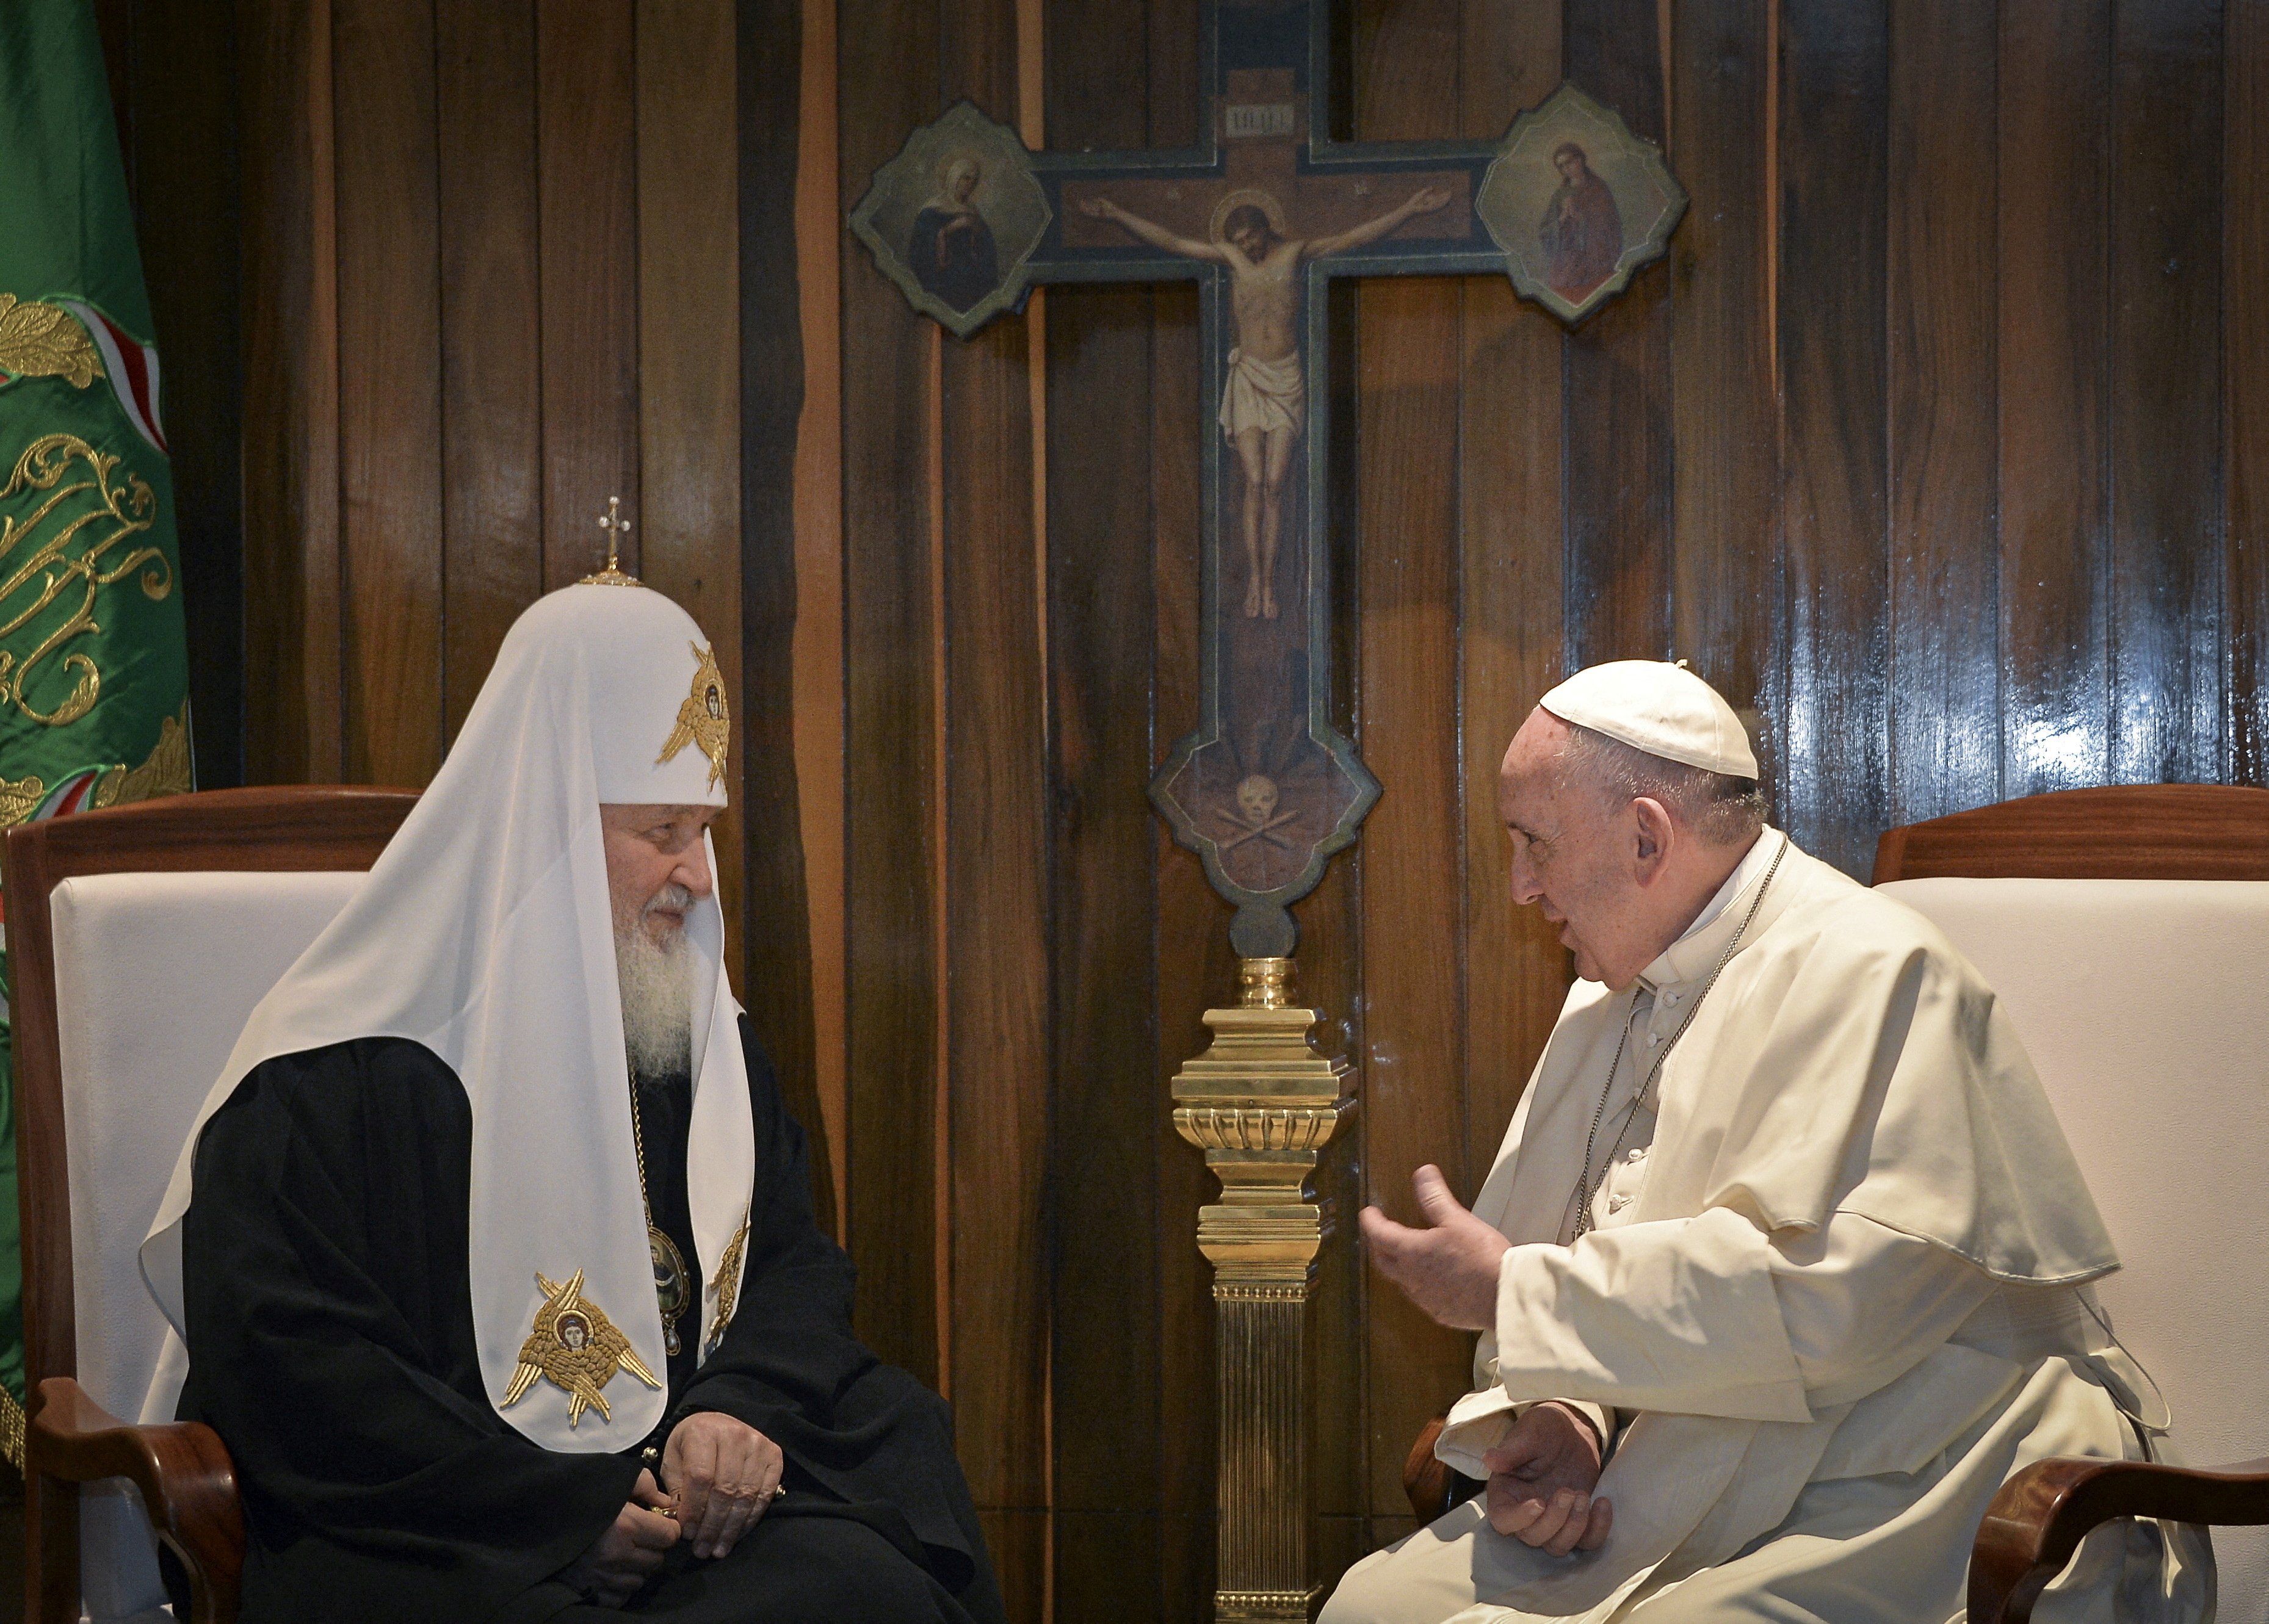 FOTO DE ARCHIVO: El Papa Francisco y el patriarca ortodoxo ruso Kirill se reúnen en La Habana el 12 de febrero de 2016. La postura del Sumo Pontífice en relación a la invasión de Vladimir Putin a Ucrania ha generado controversia en todo el mundo (Reuters)